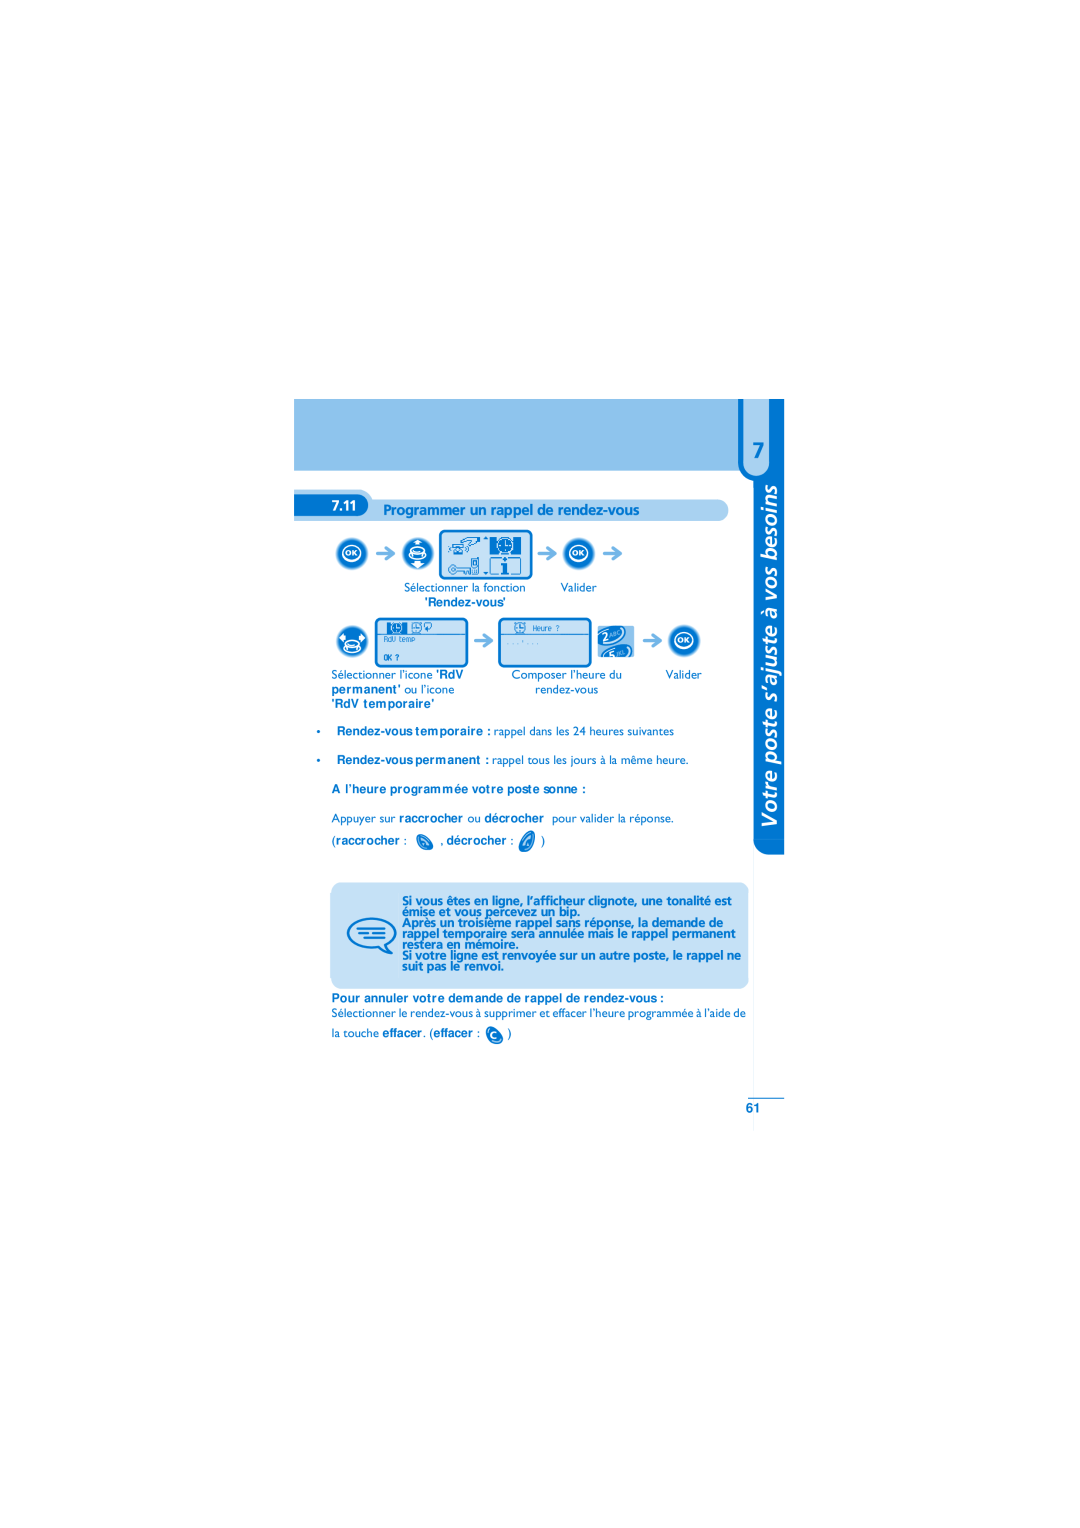 Alcatel-Lucent Mobile Reflexes 100 manual Programmer un rappel de rendez-vous, permanent ou l’icone, RdV temporaire 